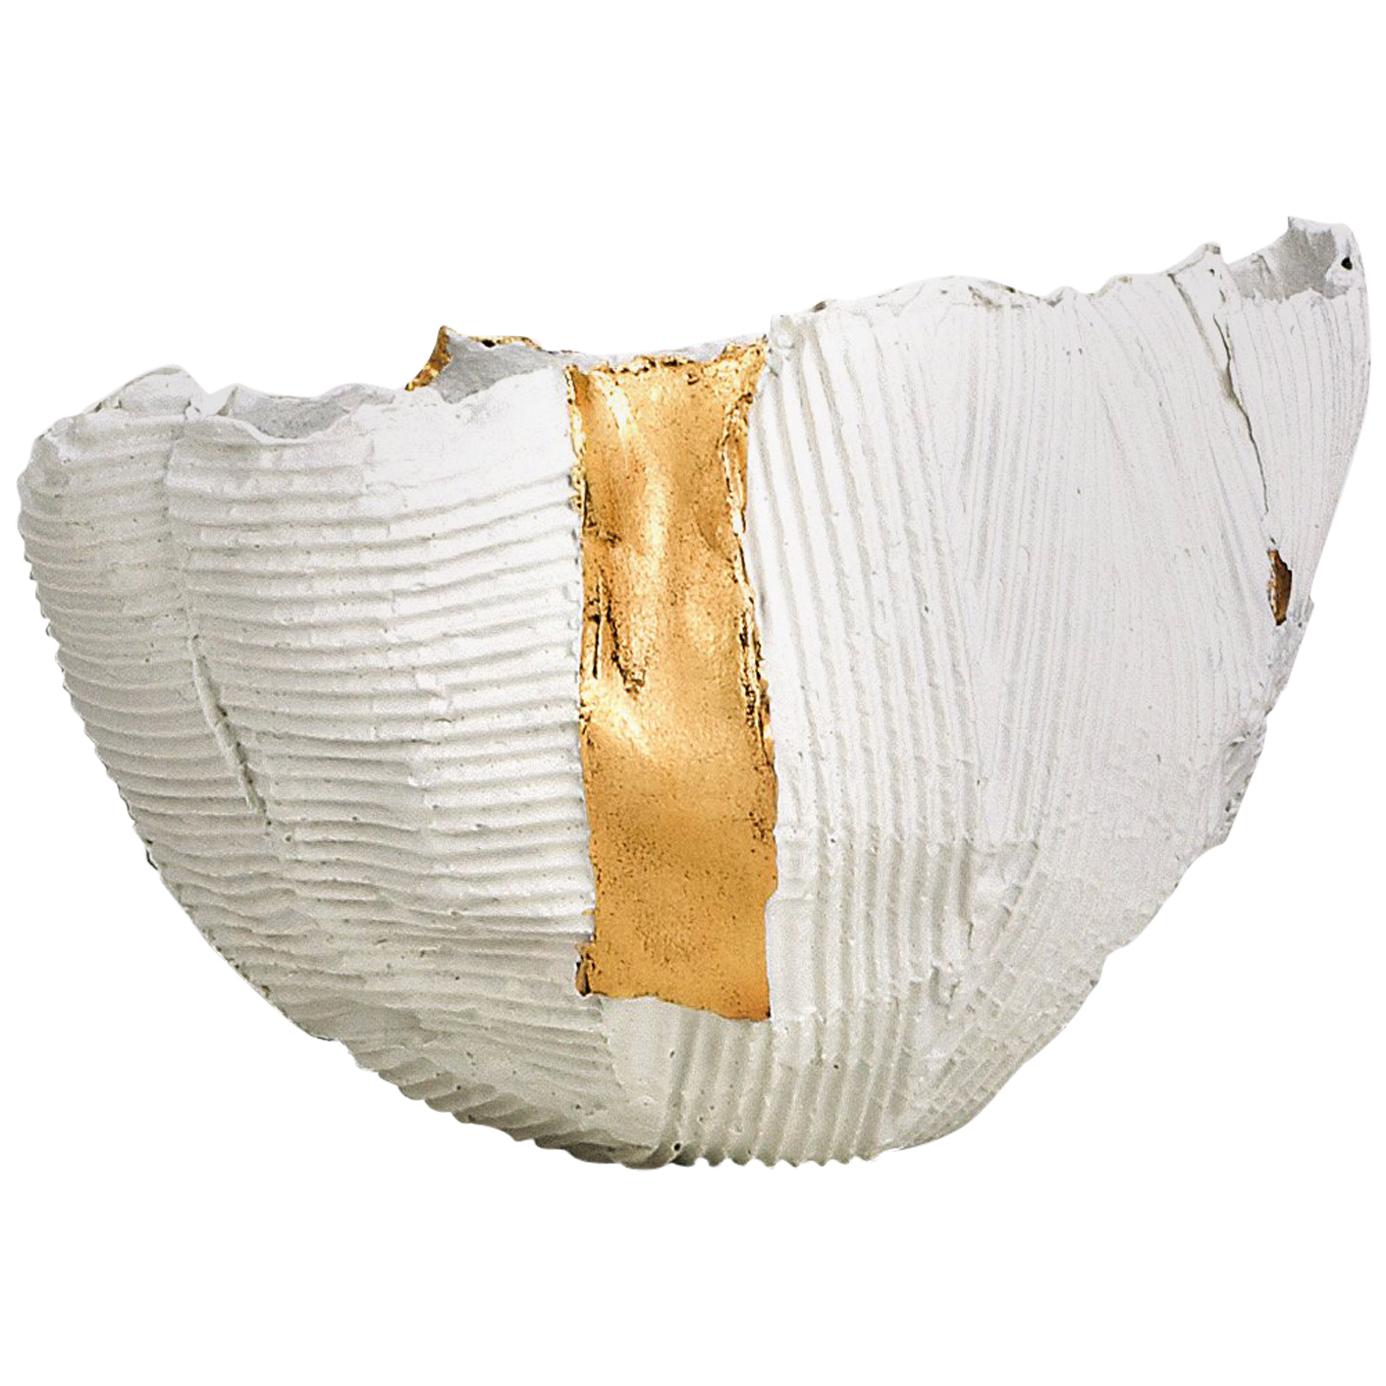 Zeitgenössische Keramikschale mit Cartocci-Textur in Weiß und Gold #2